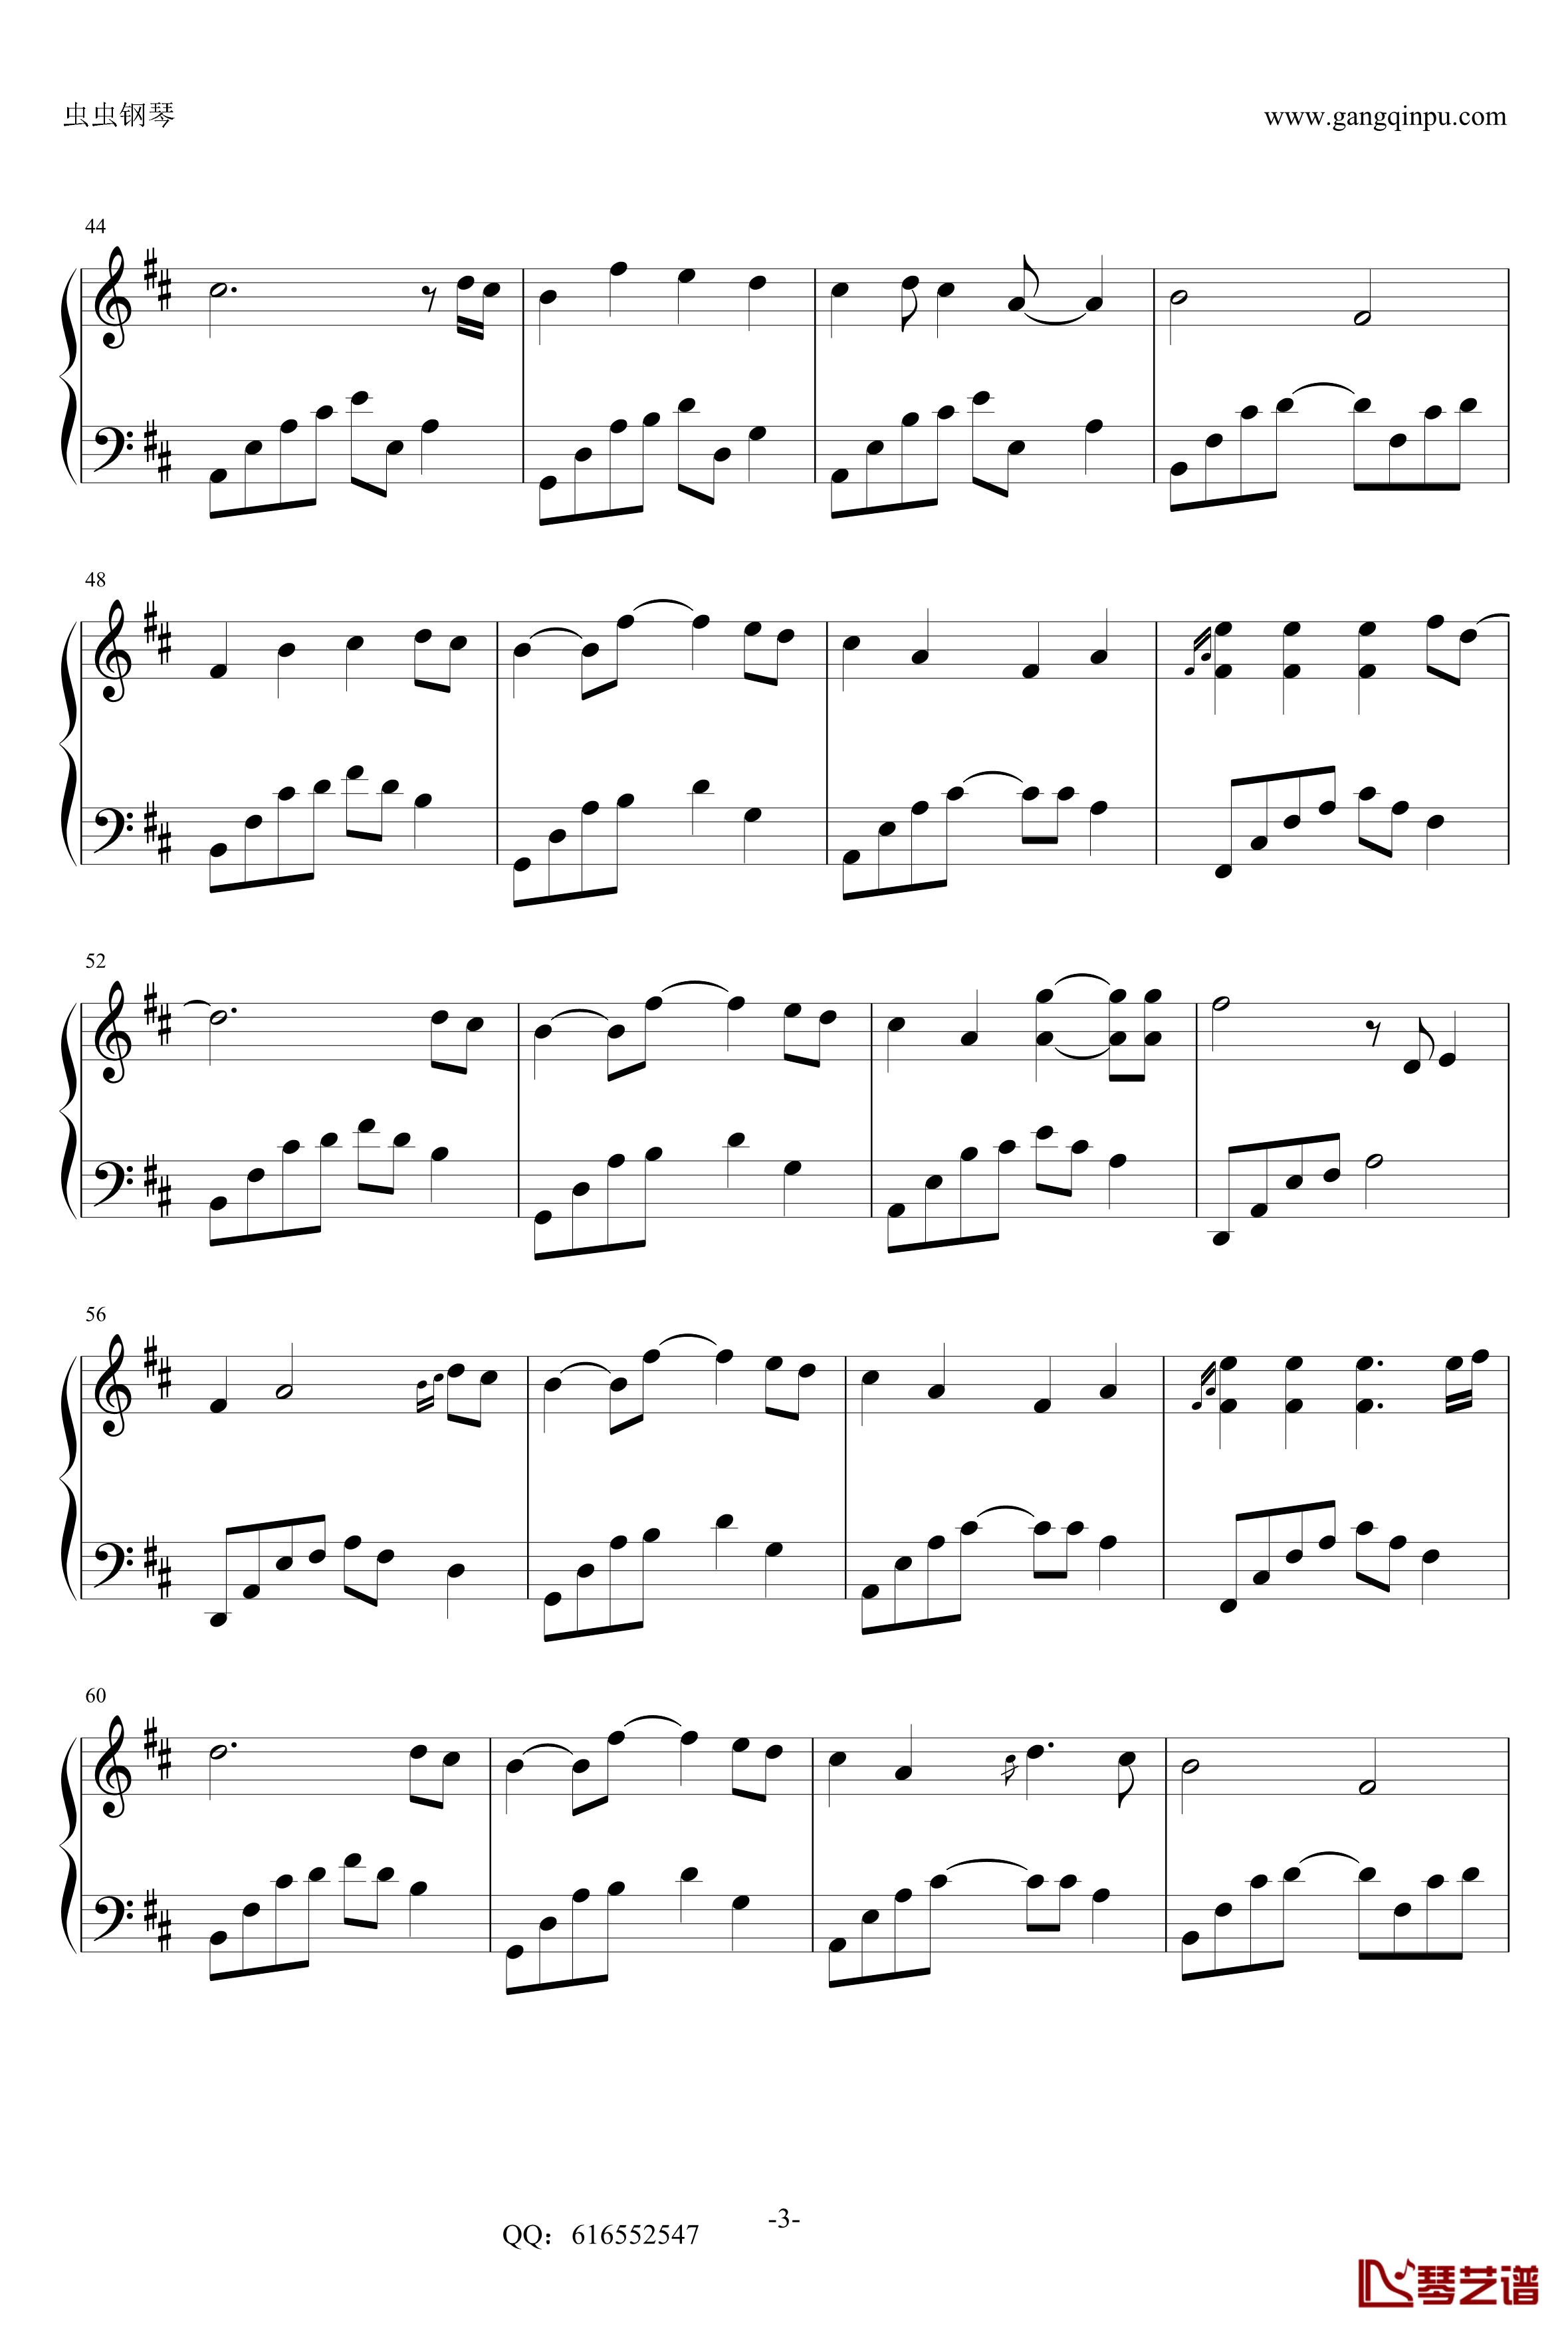 夜的钢琴曲18钢琴谱-金龙鱼优化版-石进3